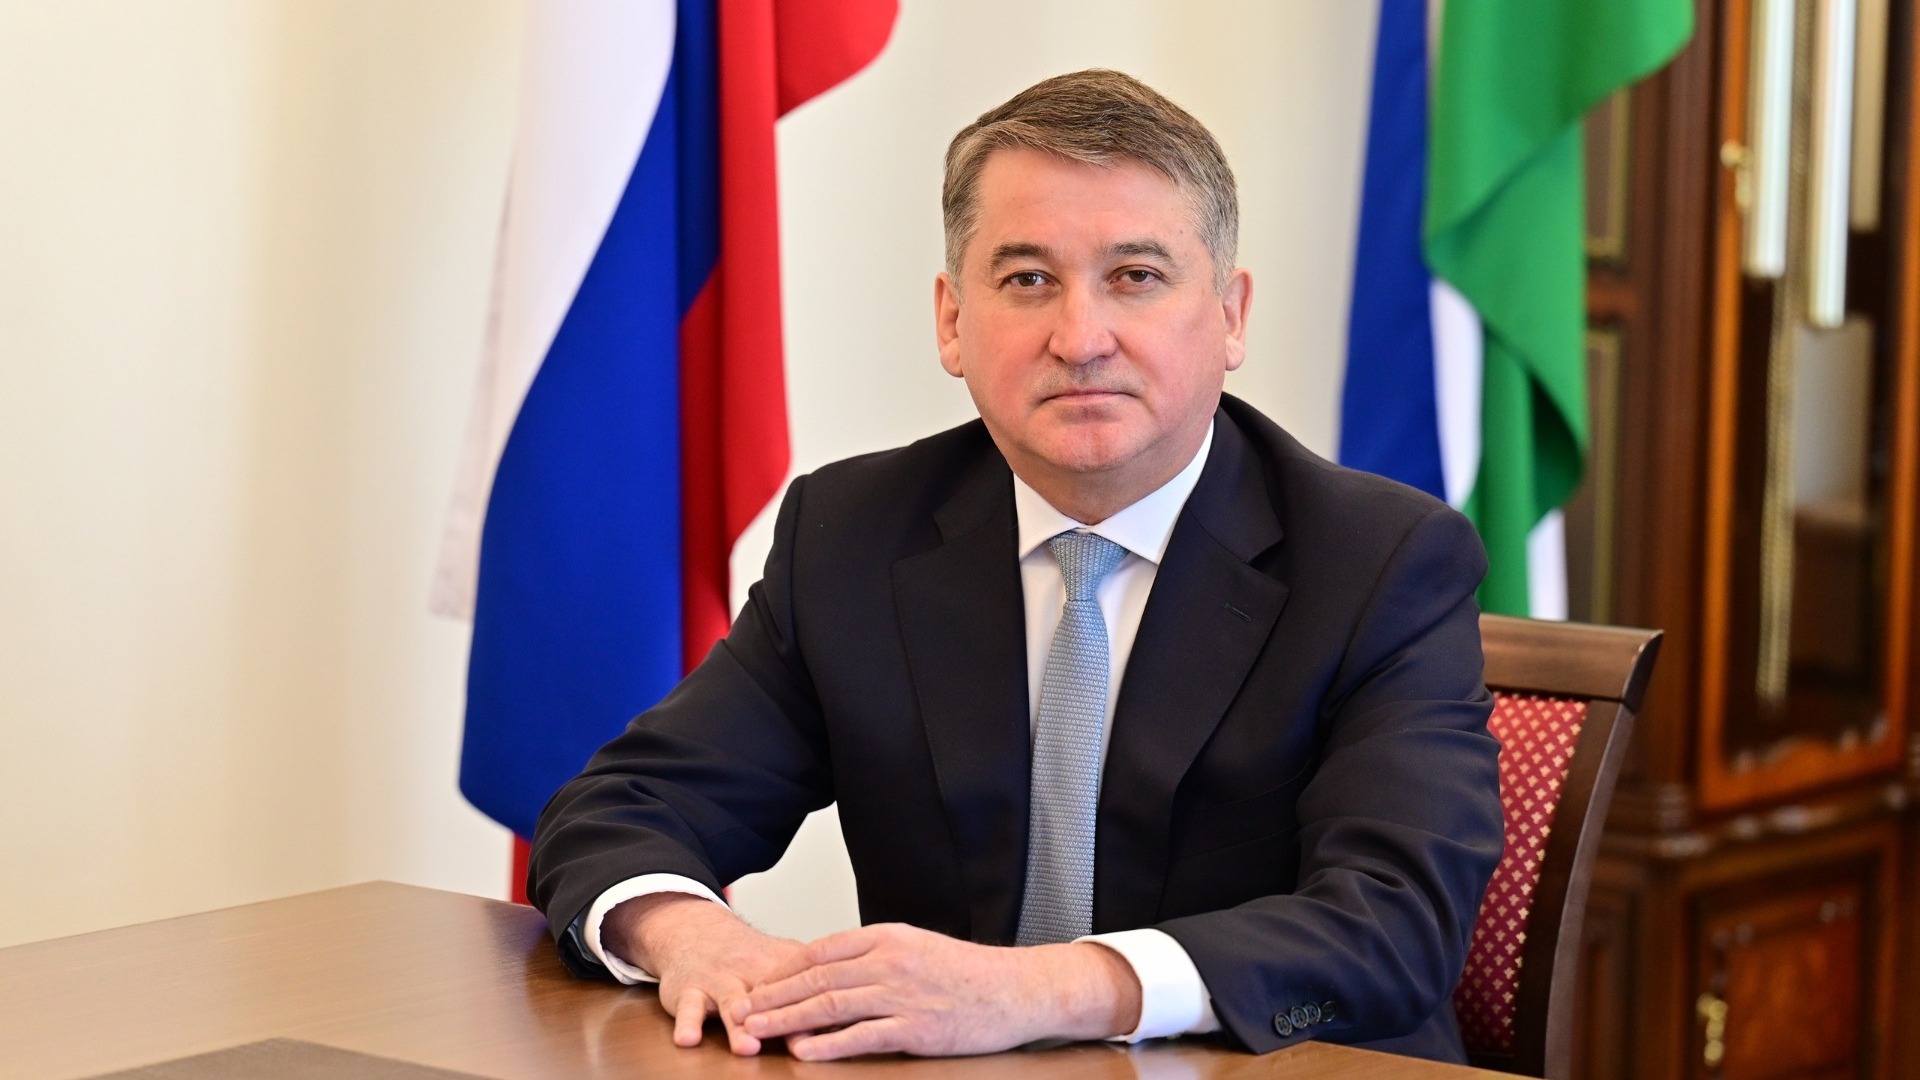 Вице-премьер правительства Башкирии Илшат Тажитдинов подал в отставку